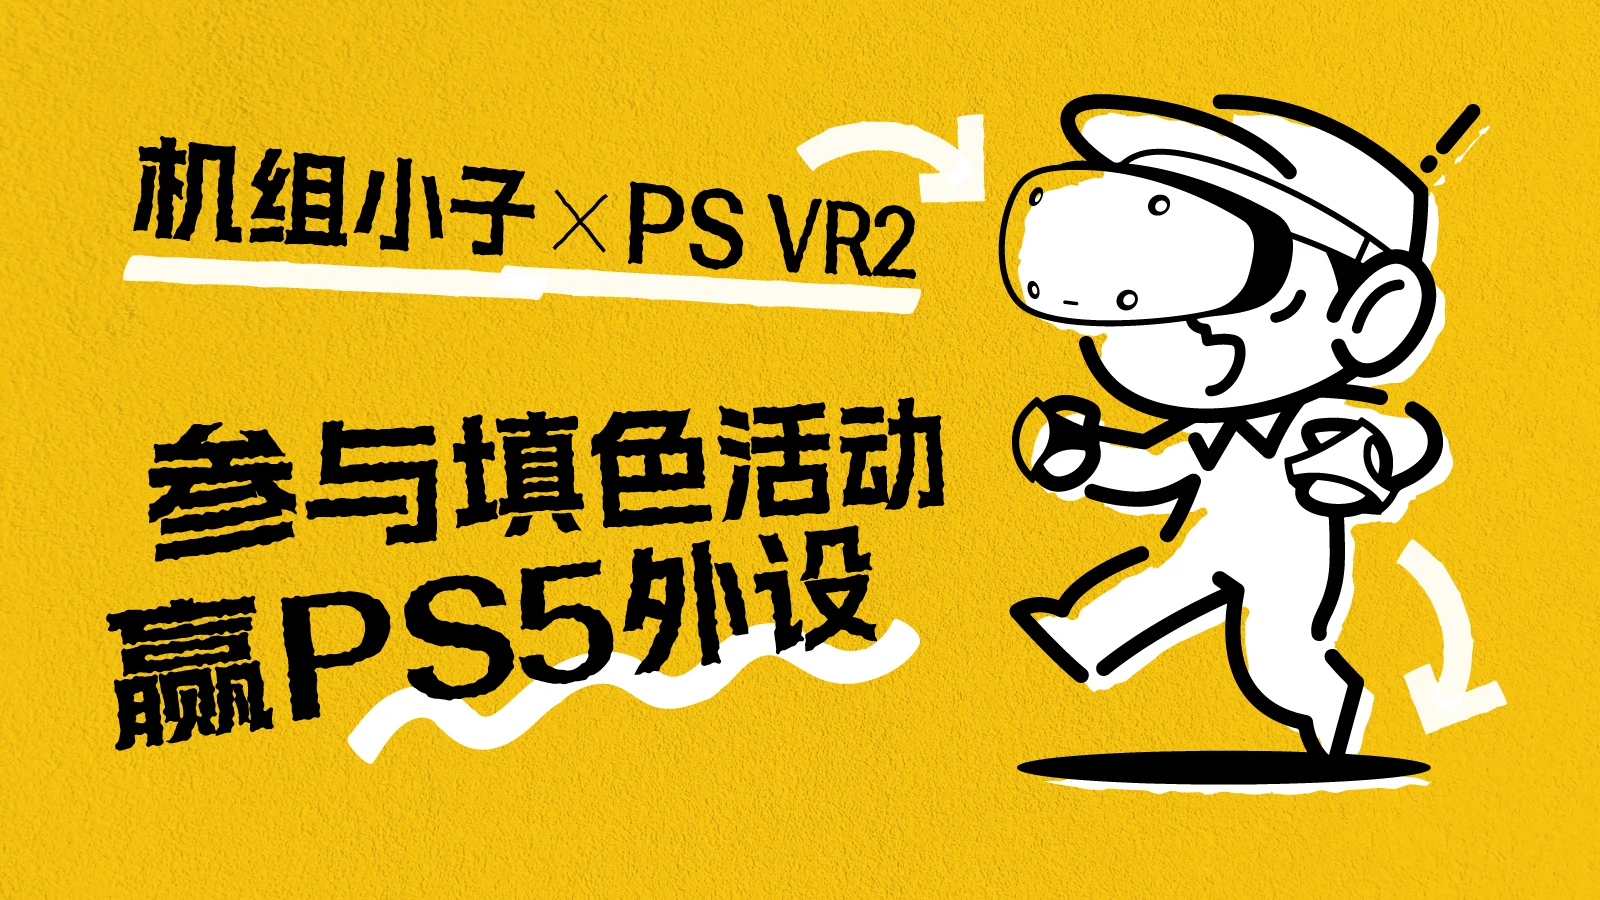 机组小子 X PS VR2 填色活动上线